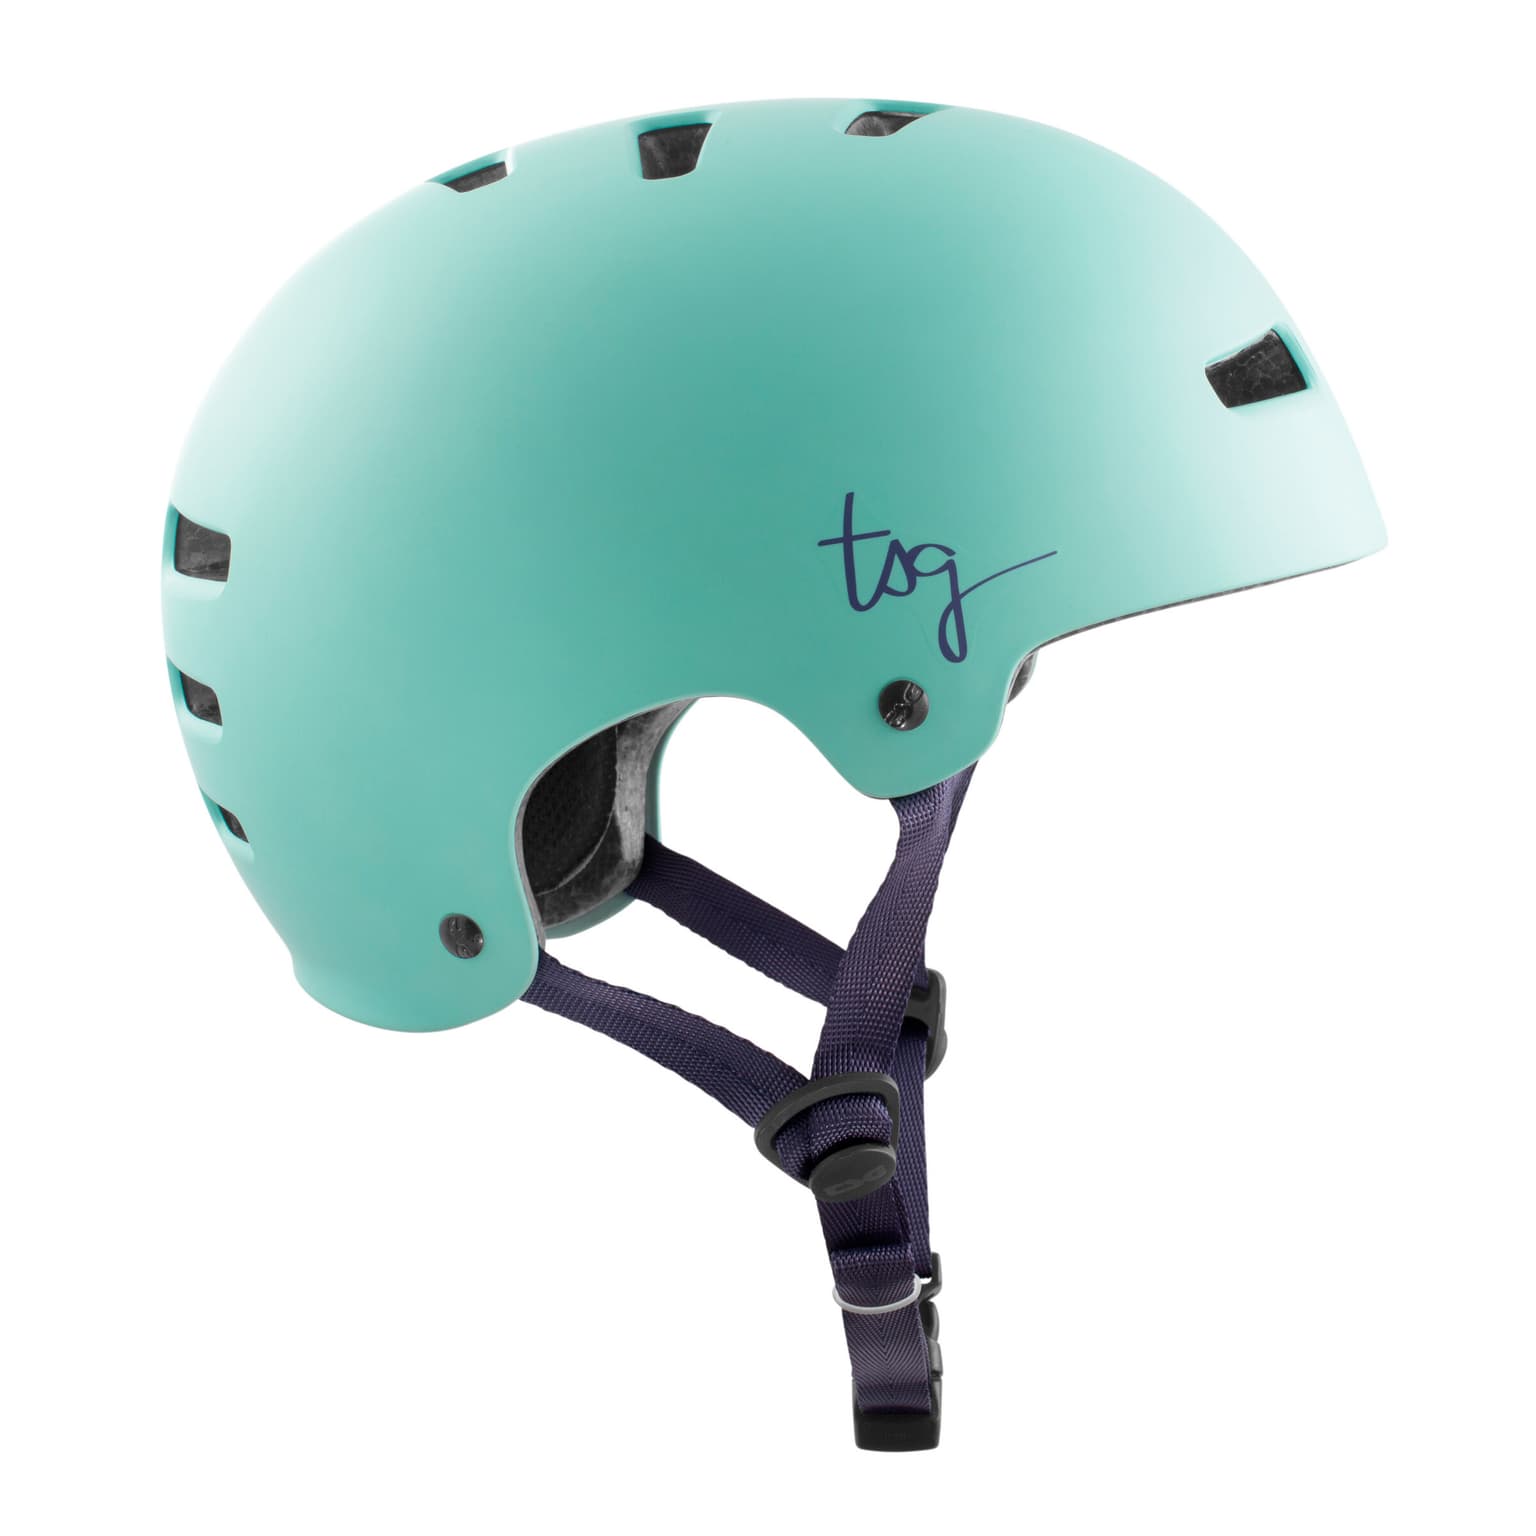 Tsg Tsg Evolution Women Solid Casque de vélo turquoise-claire 2